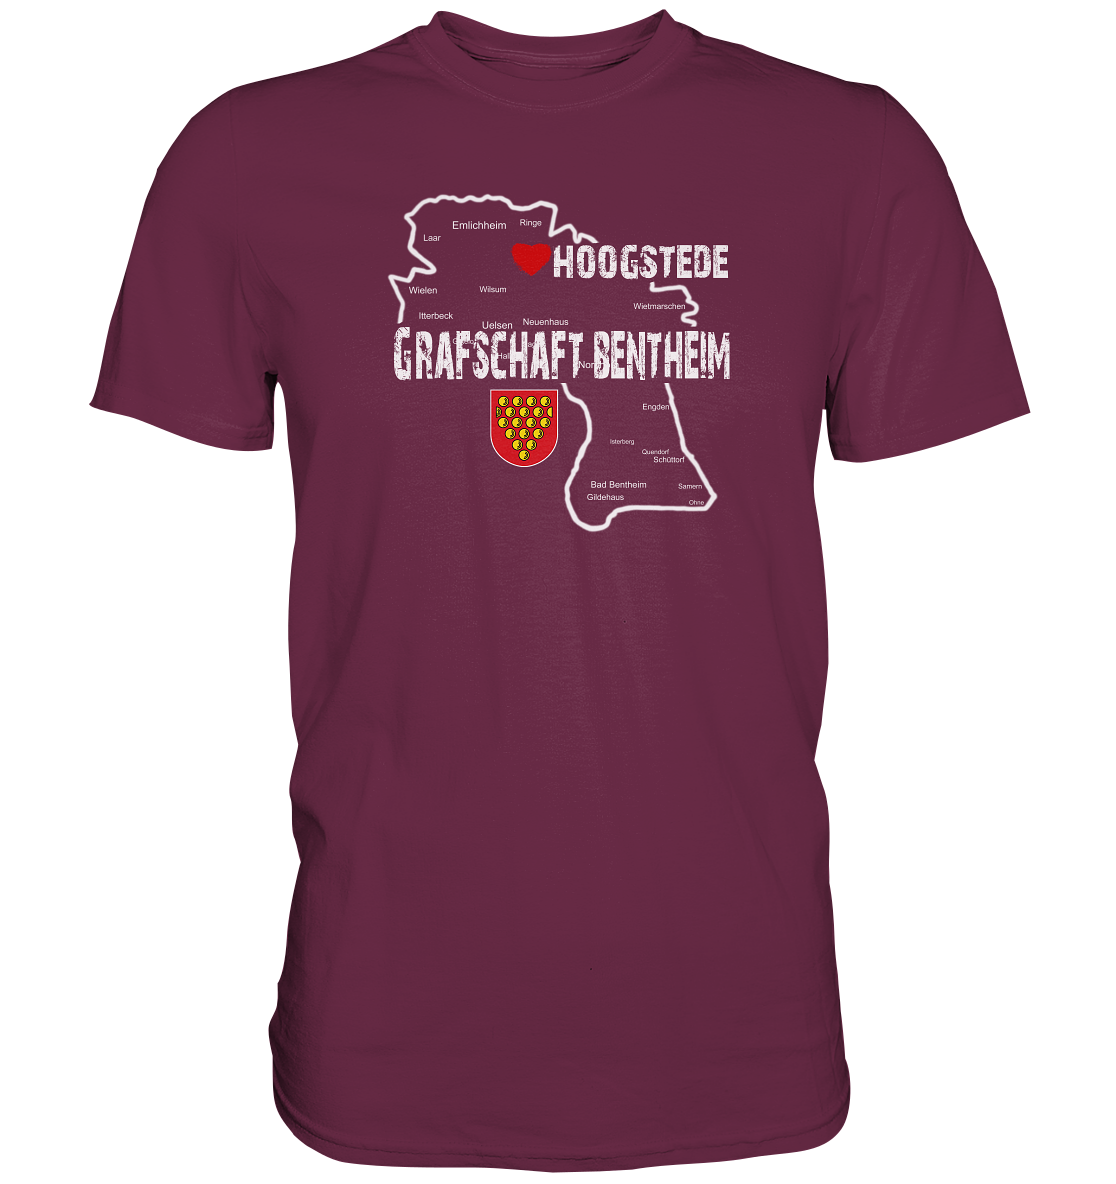 Hometown Shirt "Hoogstede" - Premium Shirt